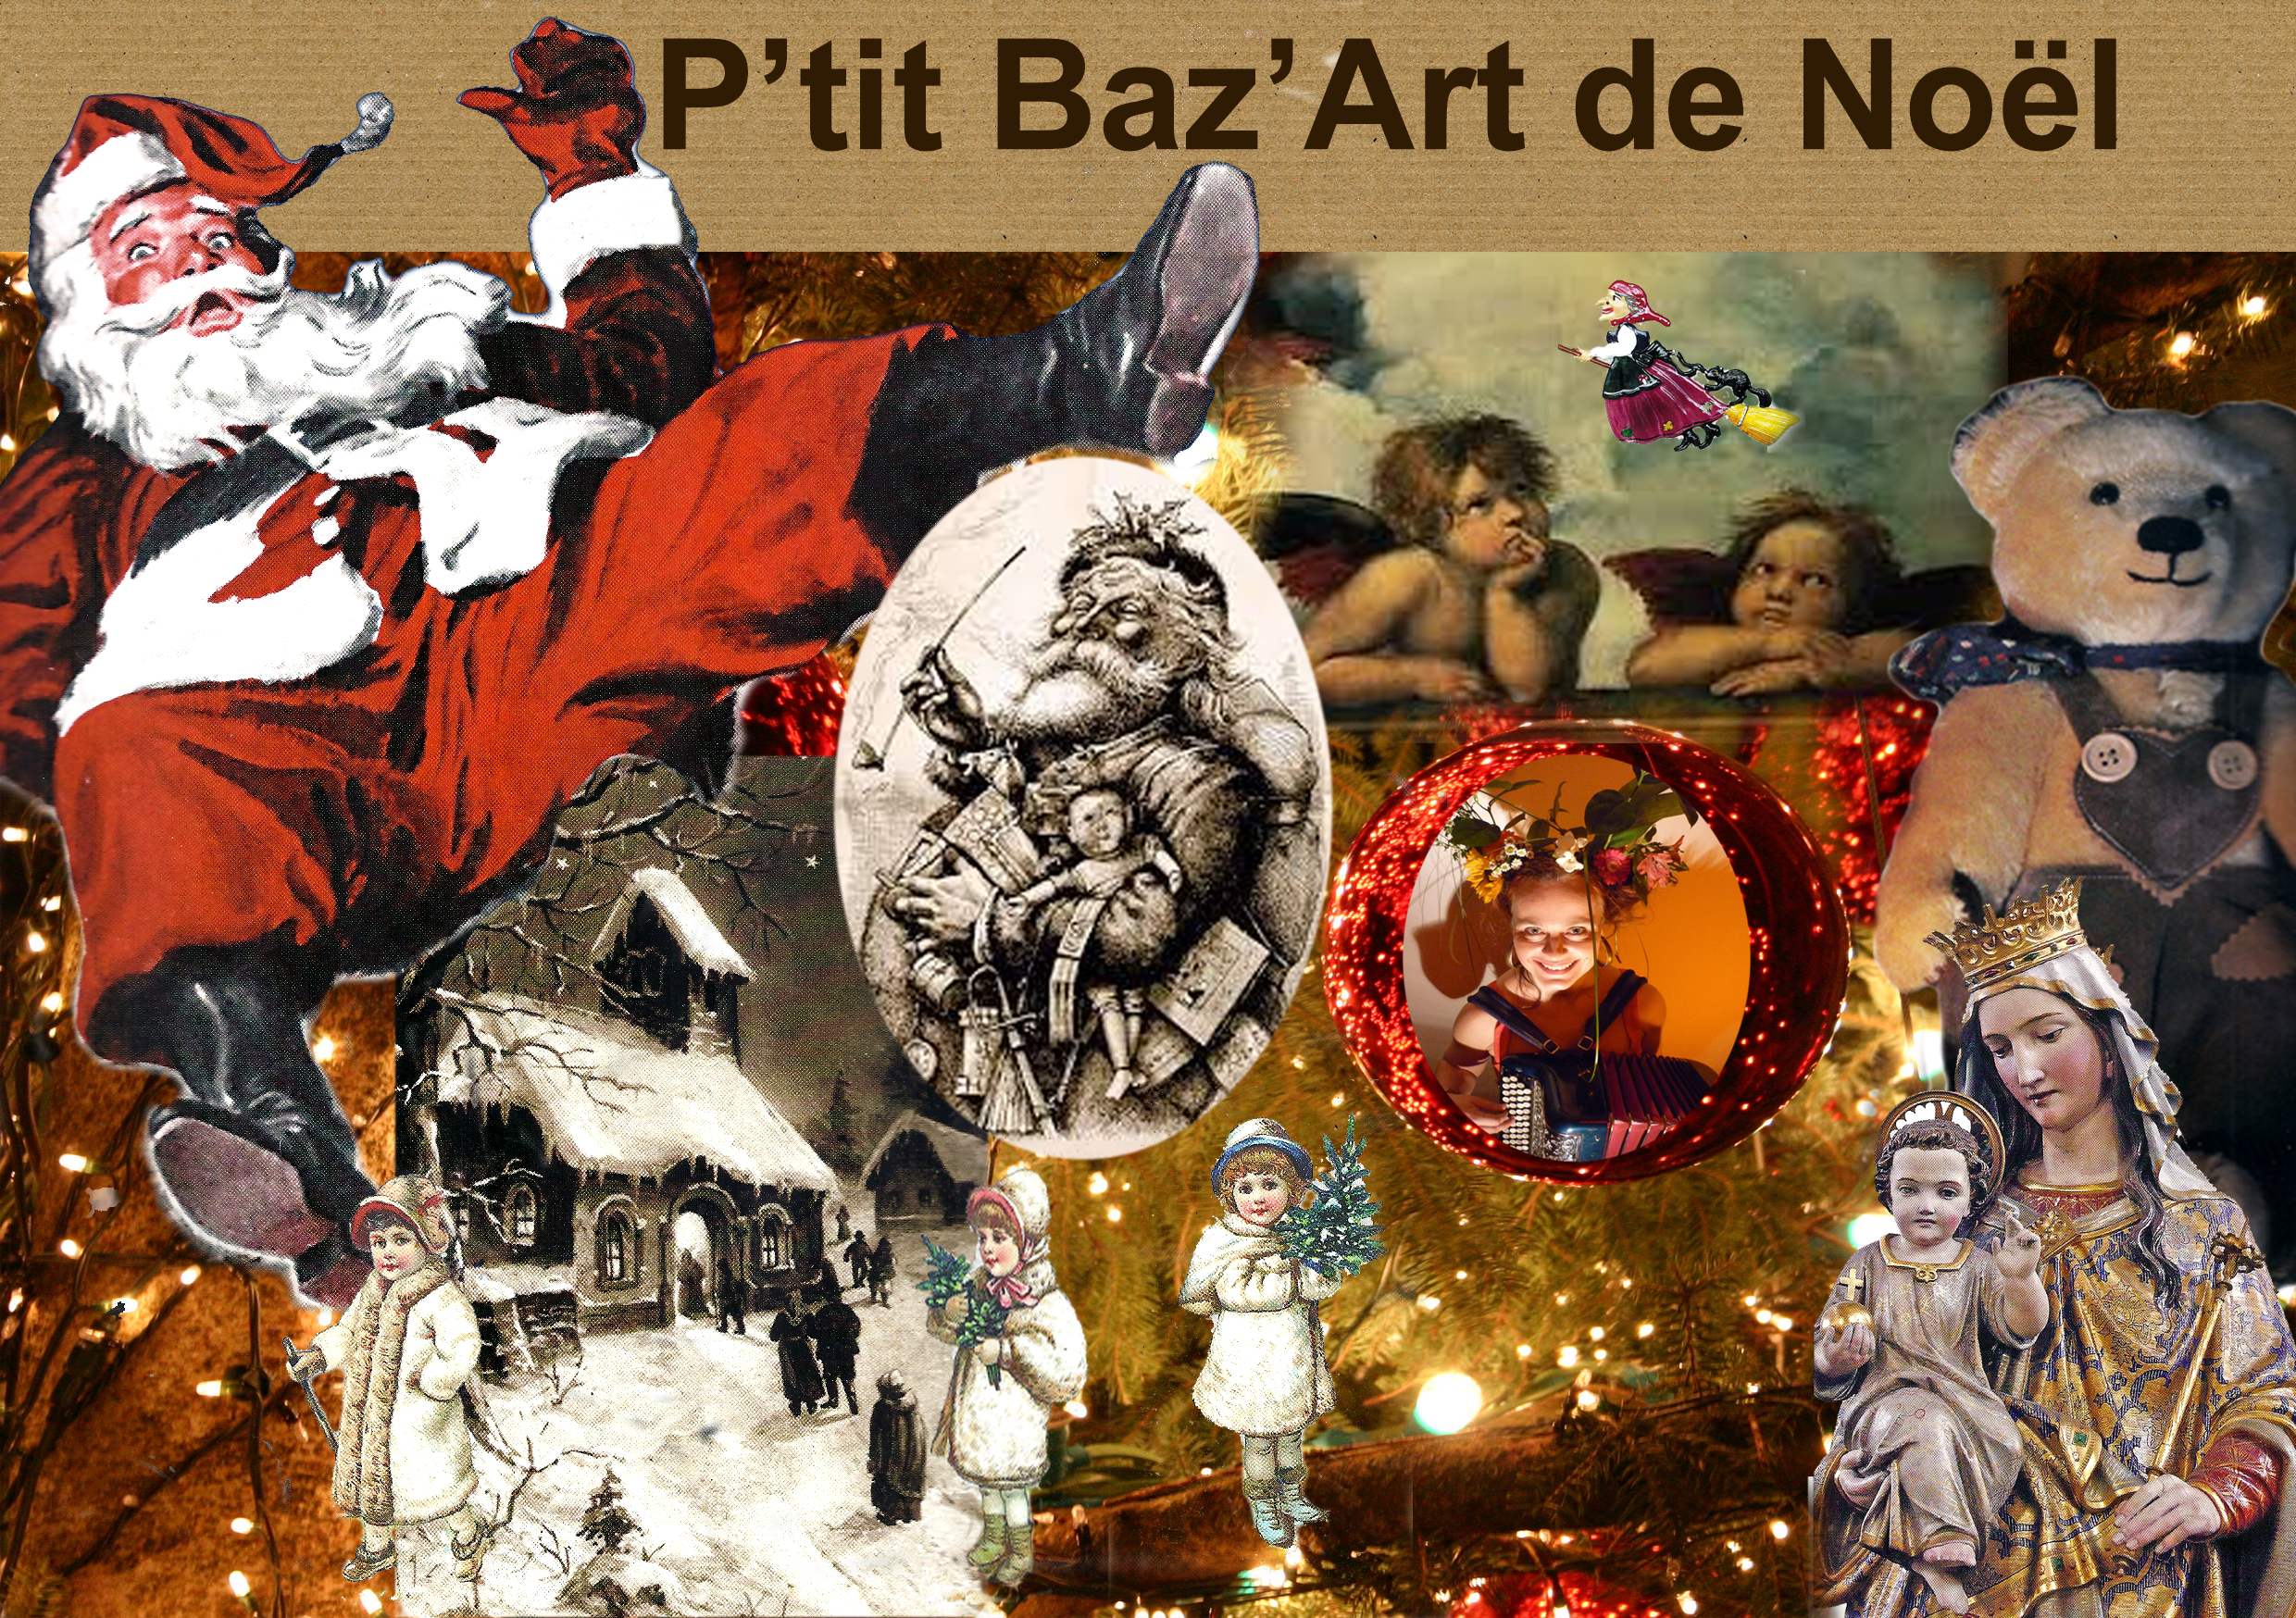 Le P'tit Baz'Art de Noël: Marché d'art et d'artisanat